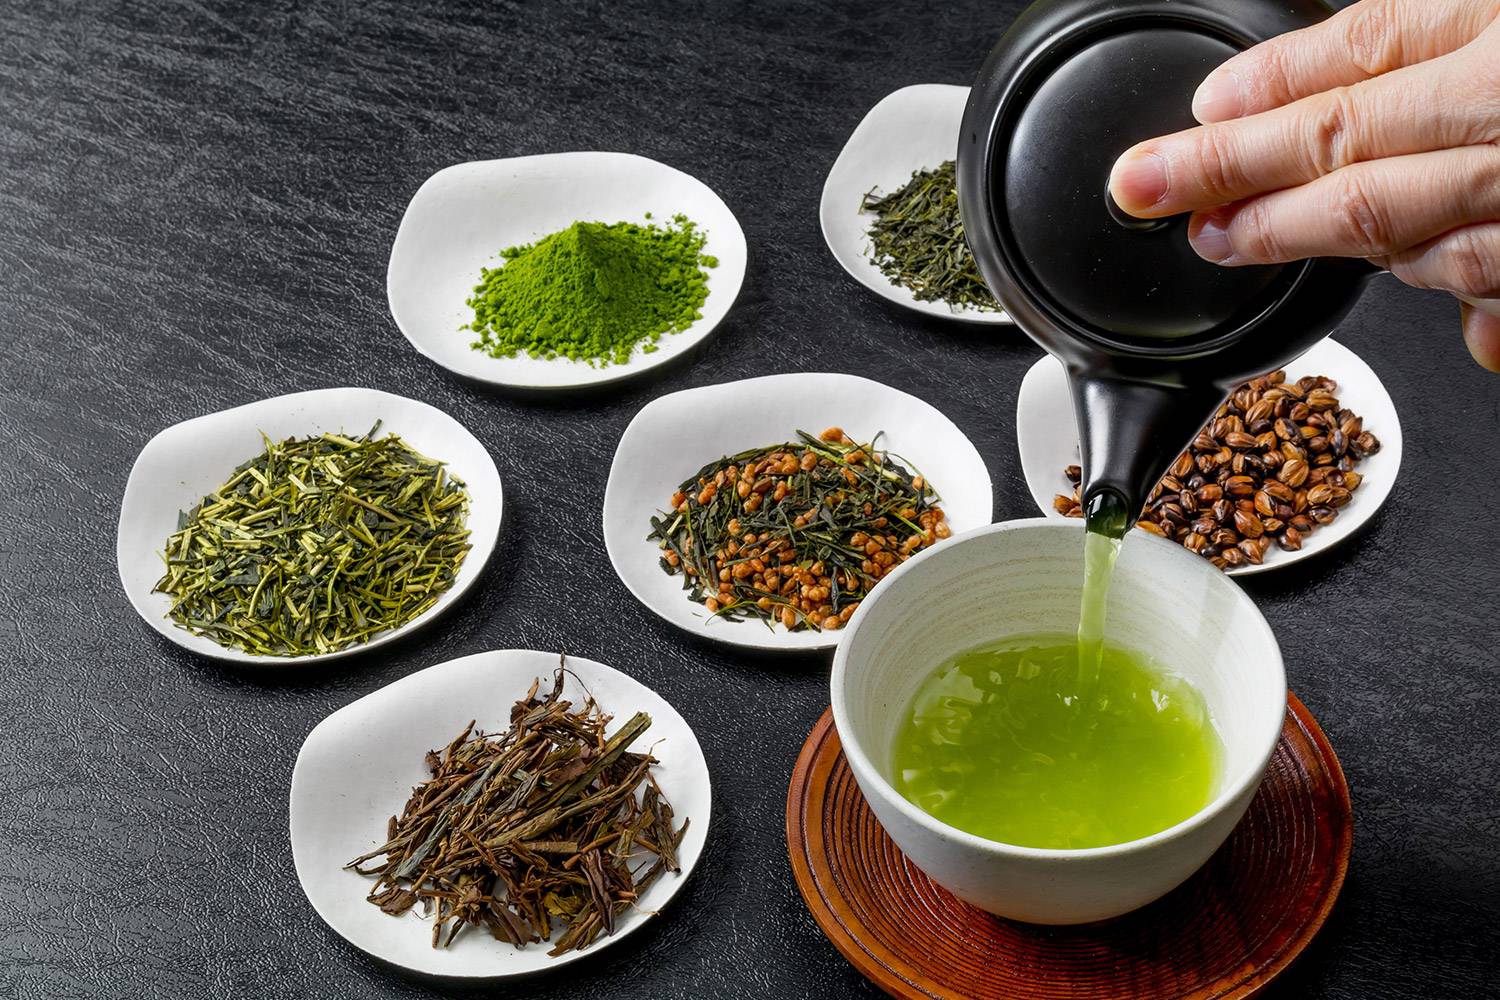 ☕самые хорошие сорта зеленого чая: от элитных до бюджетных